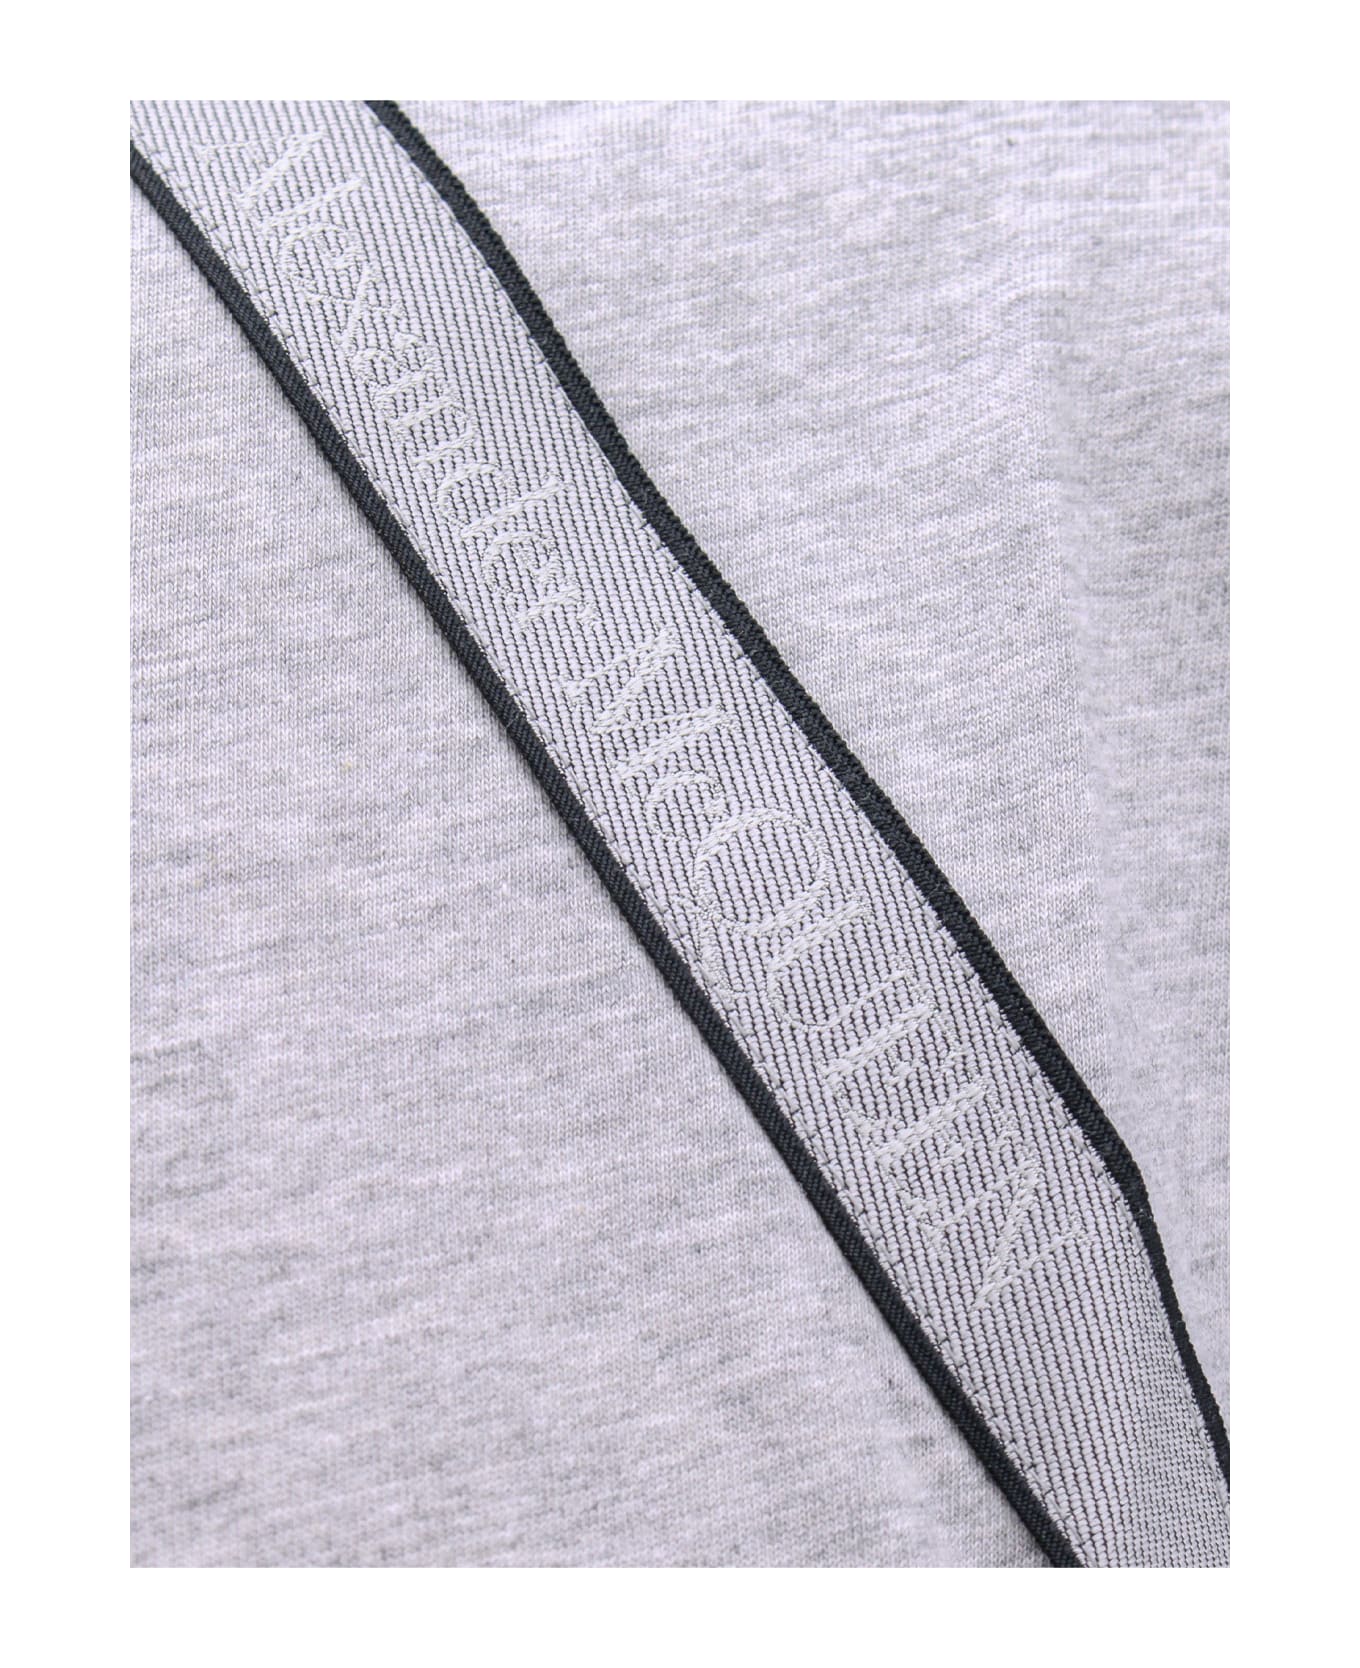 Alexander McQueen Logo Tape T-shirt - Grey